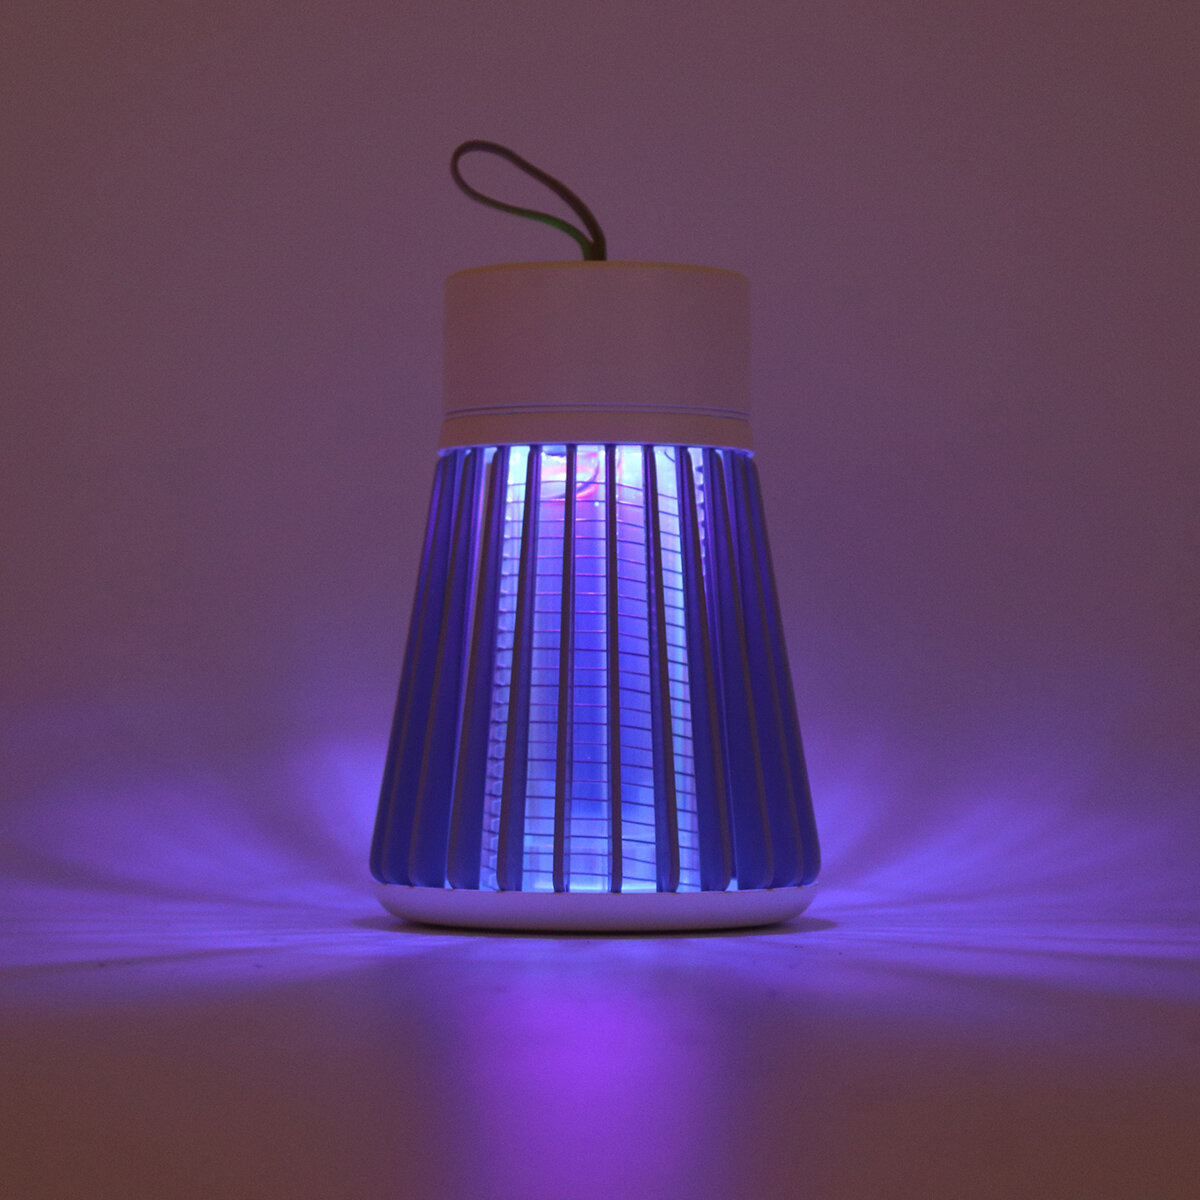 Лампа от насекомых с аккумулятором, низкий уровень шума, ловушка от комаров физическое средство от комаров.